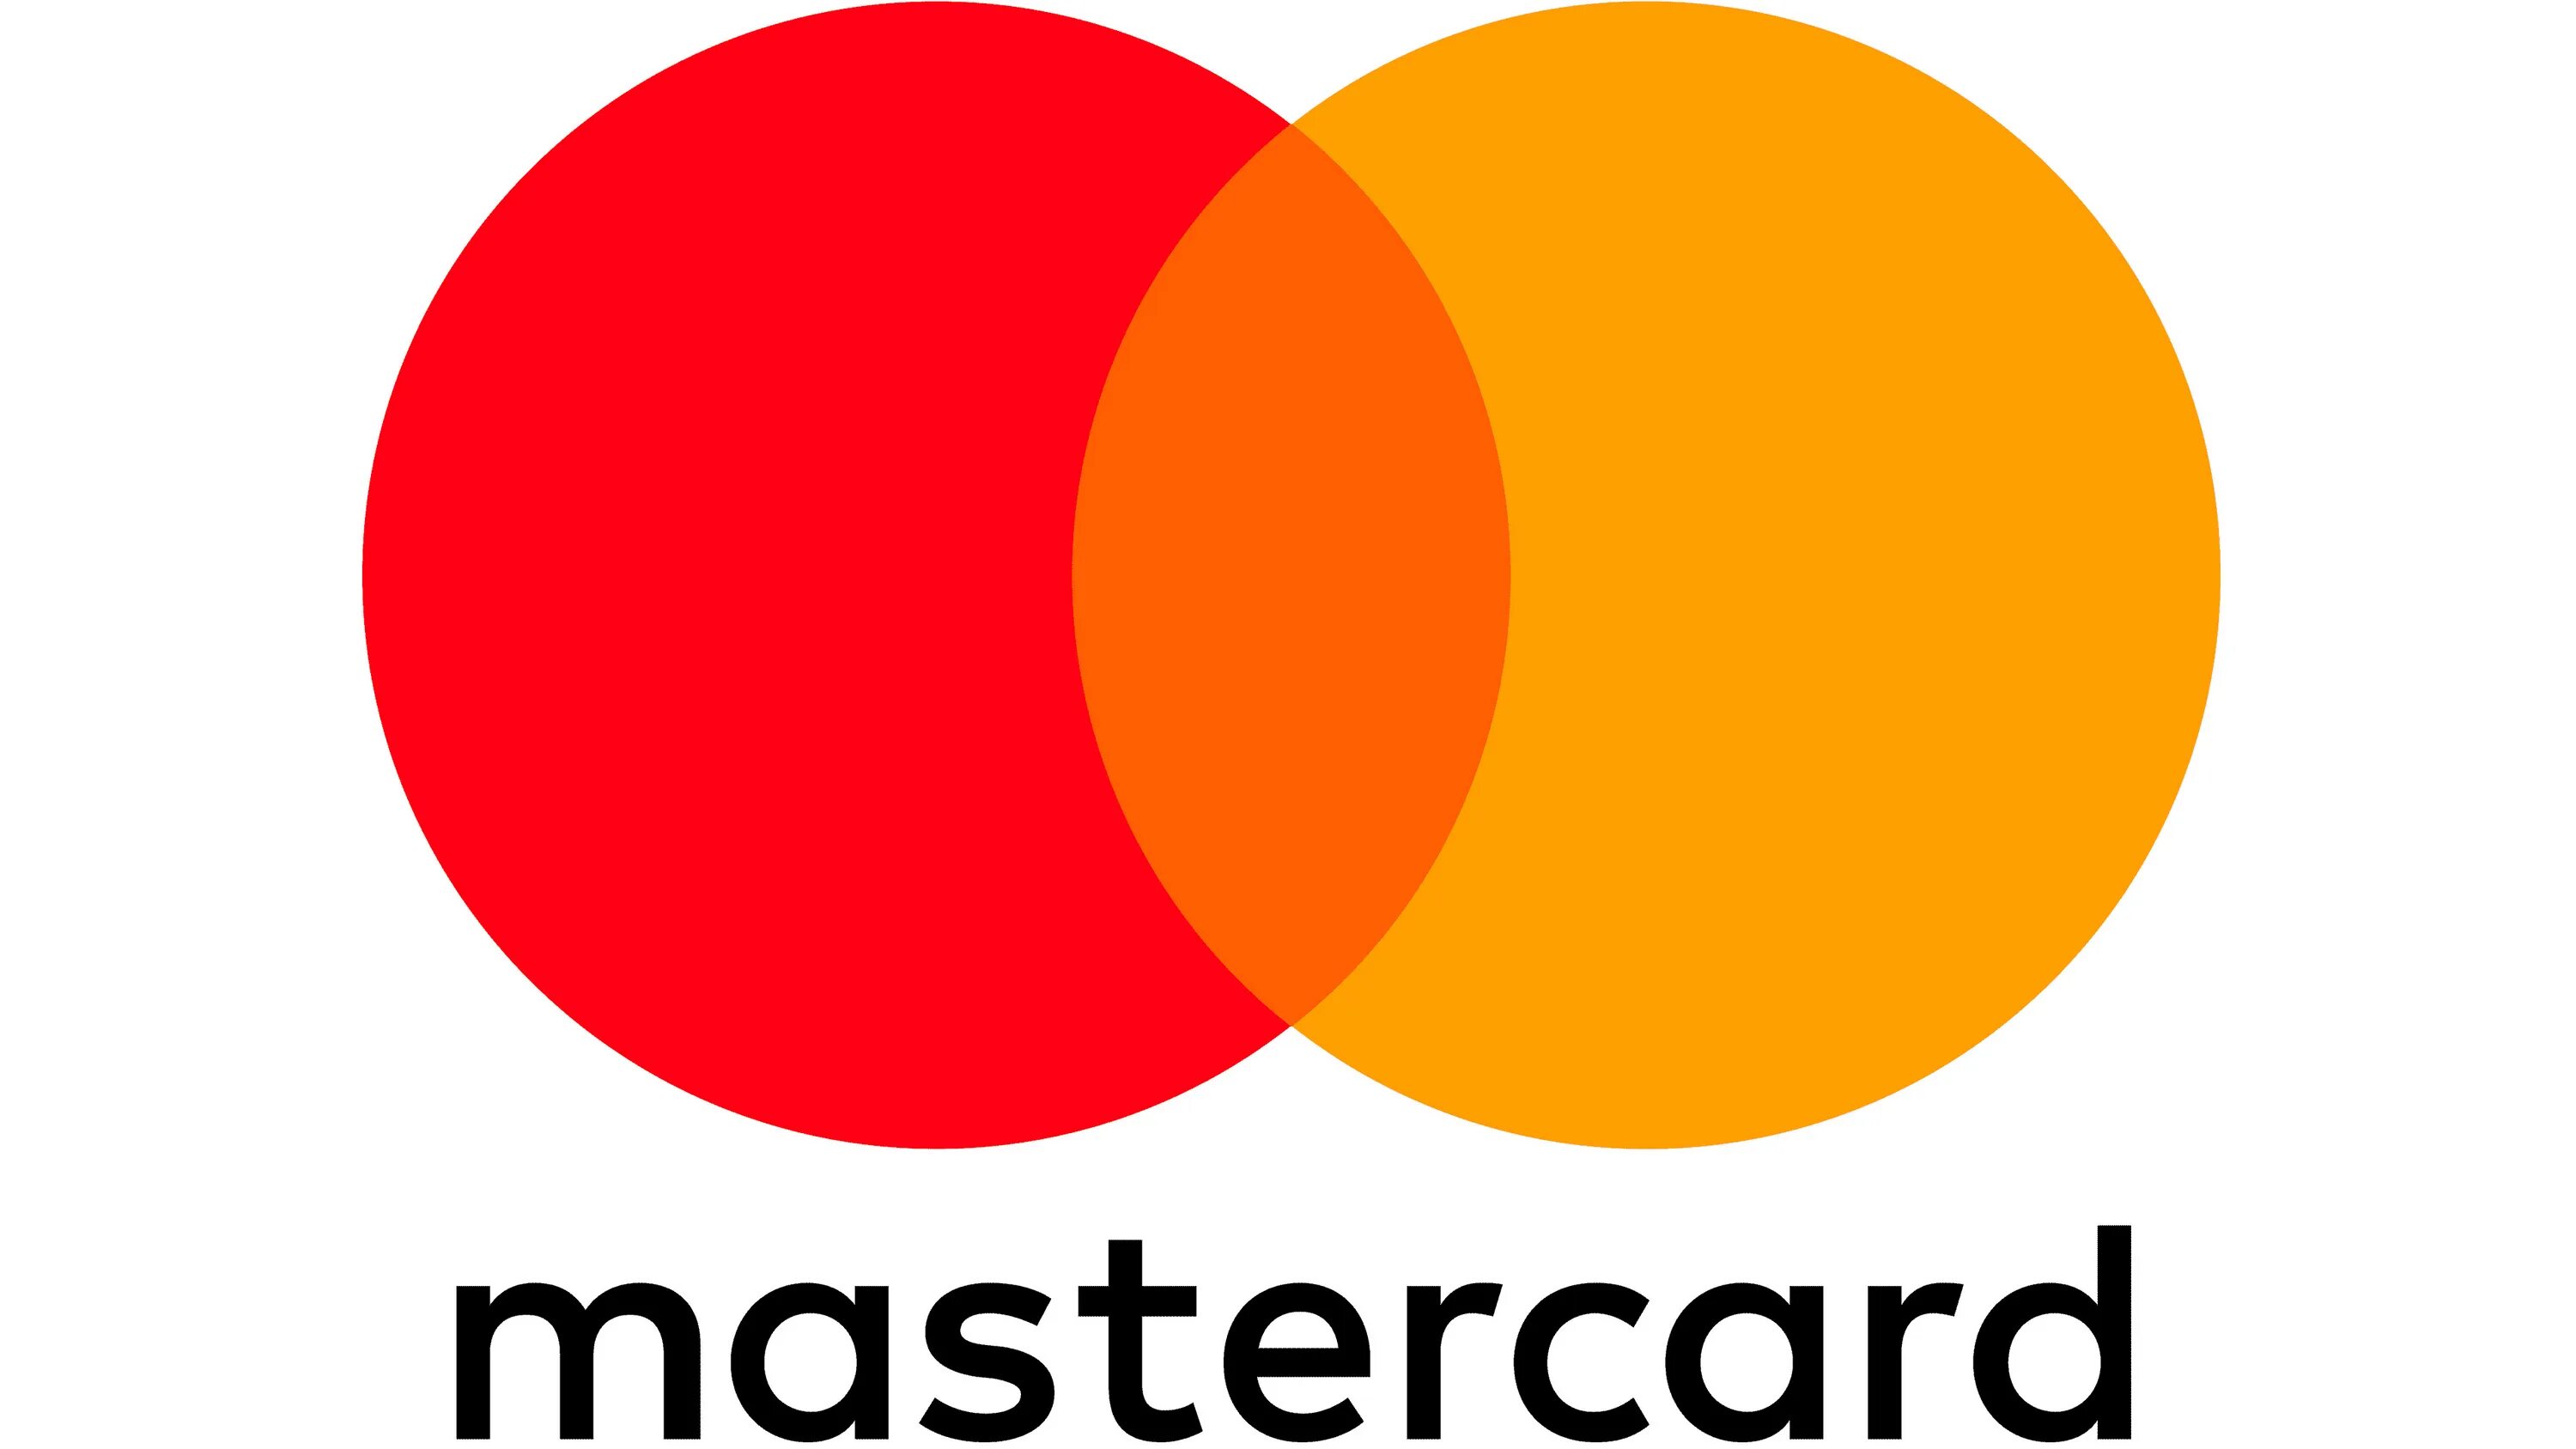 T me brand mastercard. Мастеркард. Мастеркард лого. Логотип MASTERCARD на прозрачном фоне. Мастеркард лого на белом фоне.